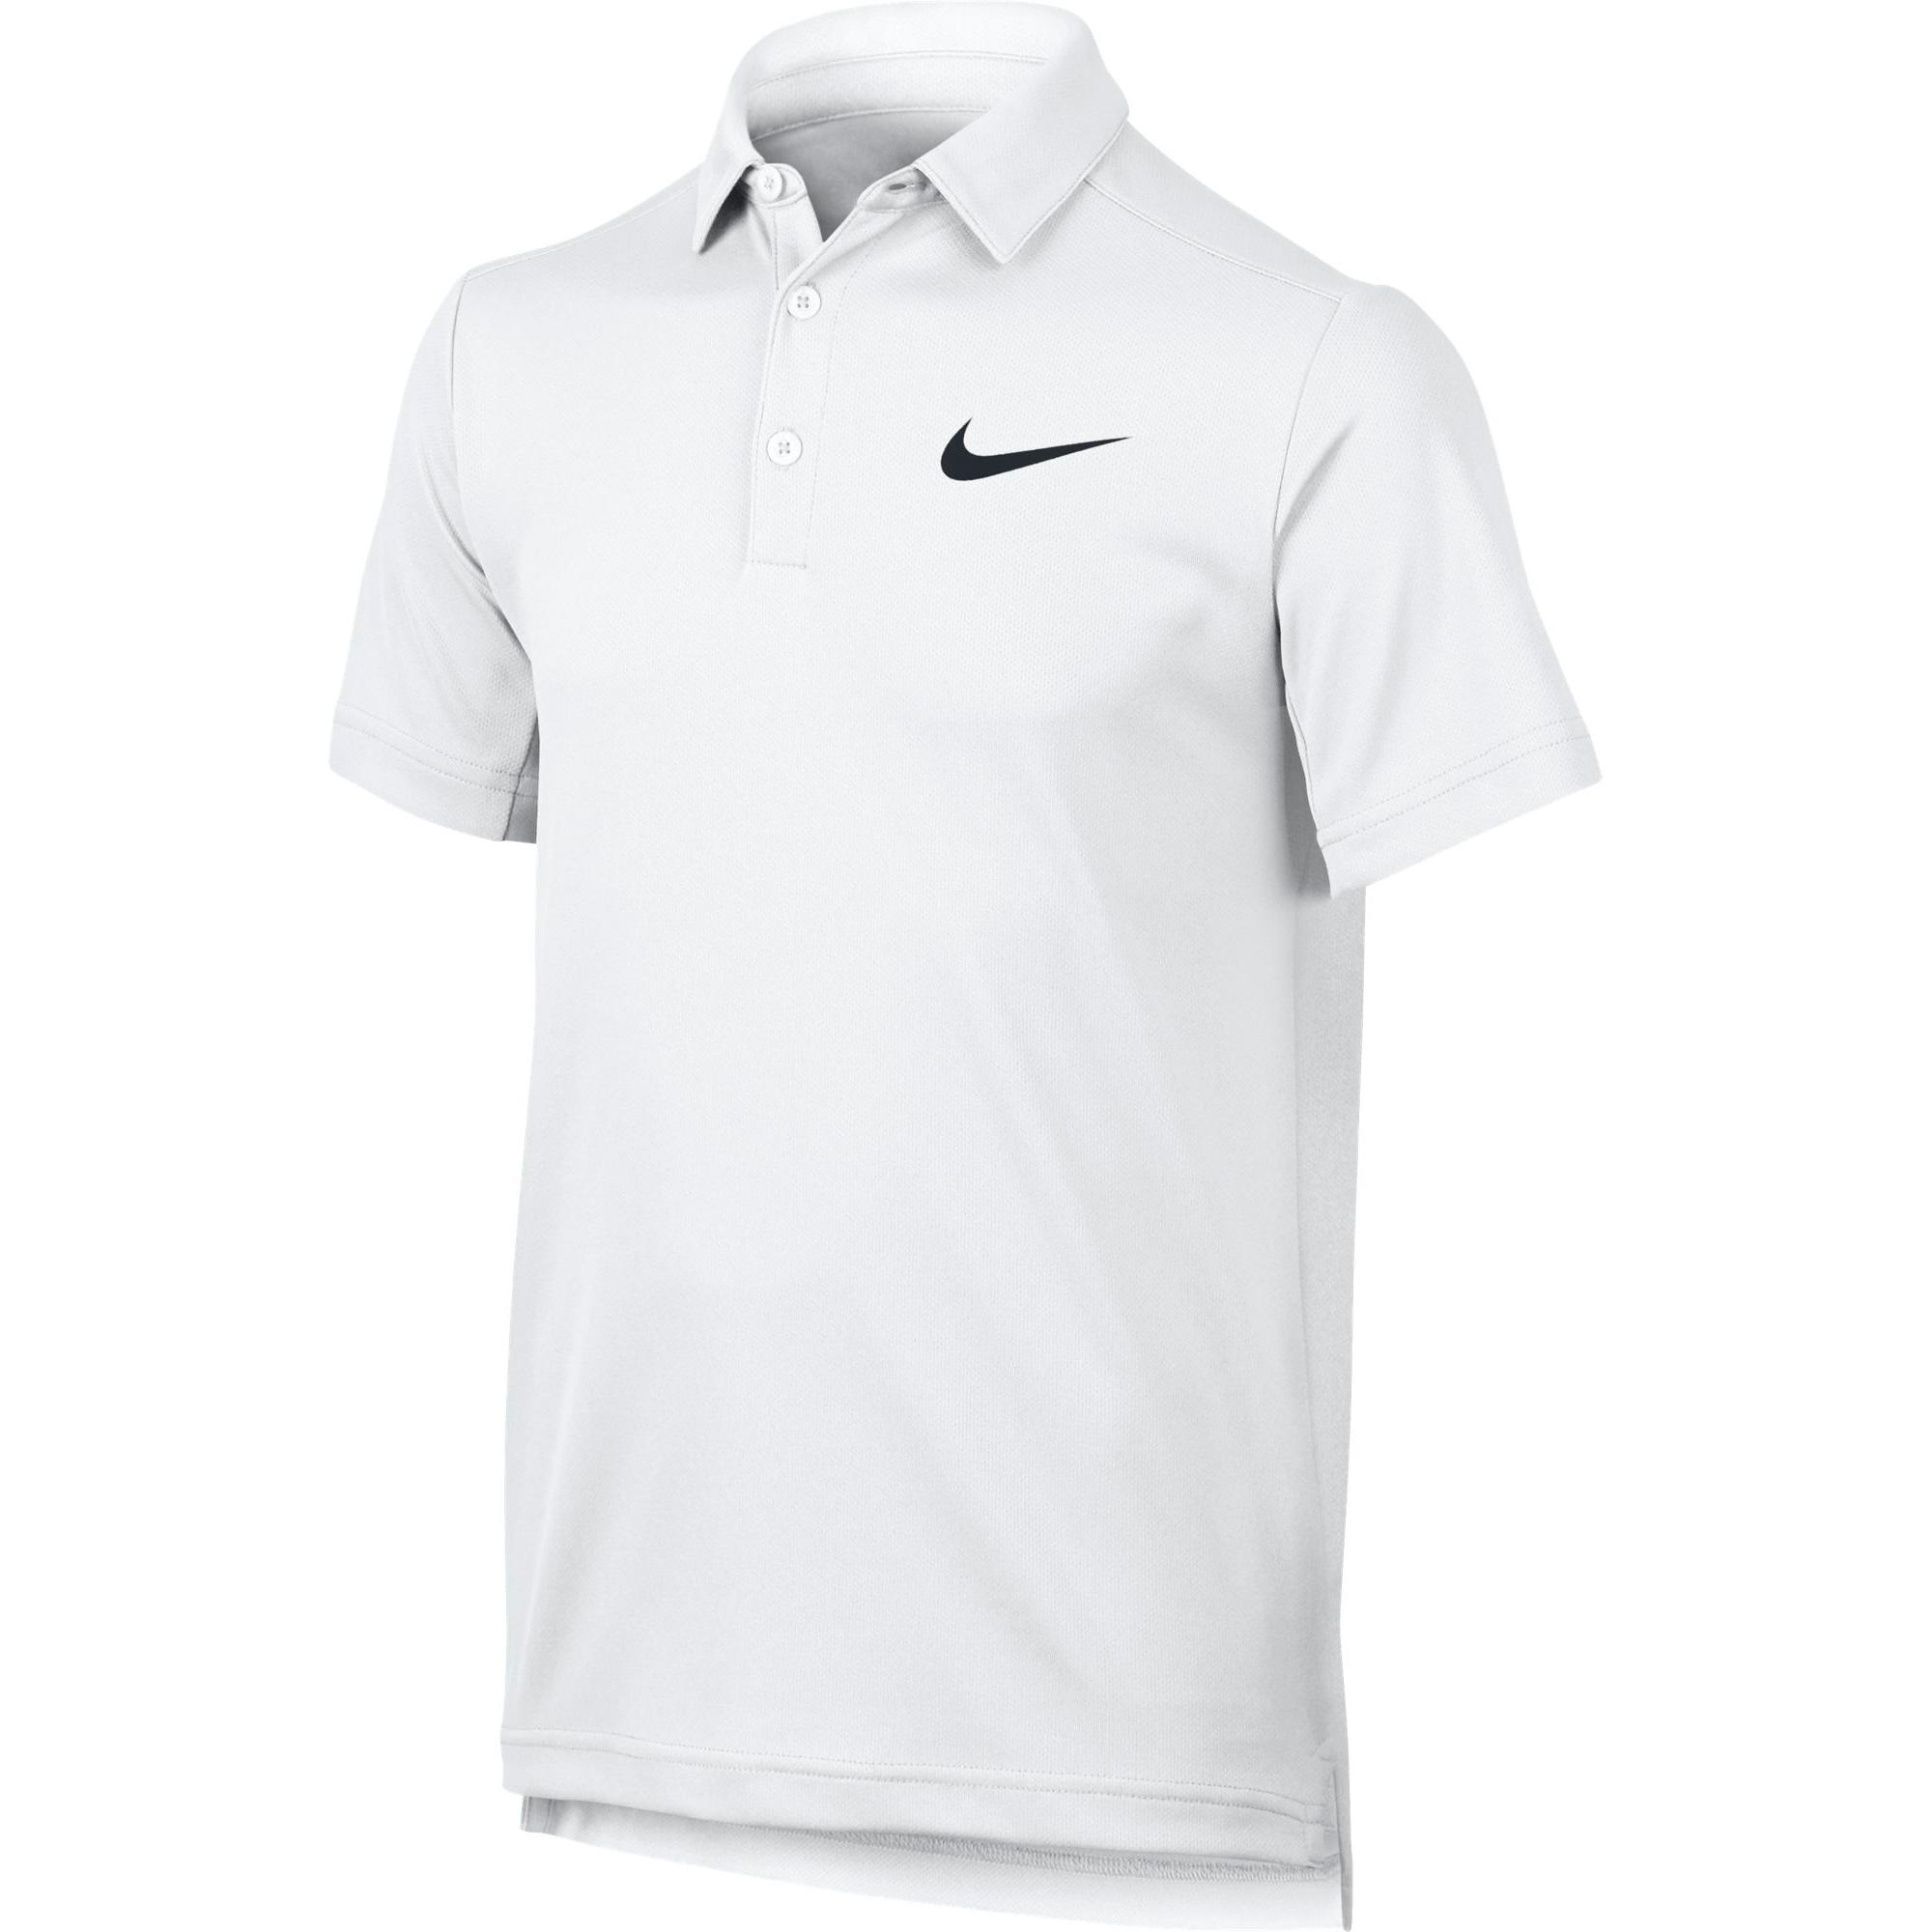 Nike Boys Dry Tennis Polo - White - Tennisnuts.com